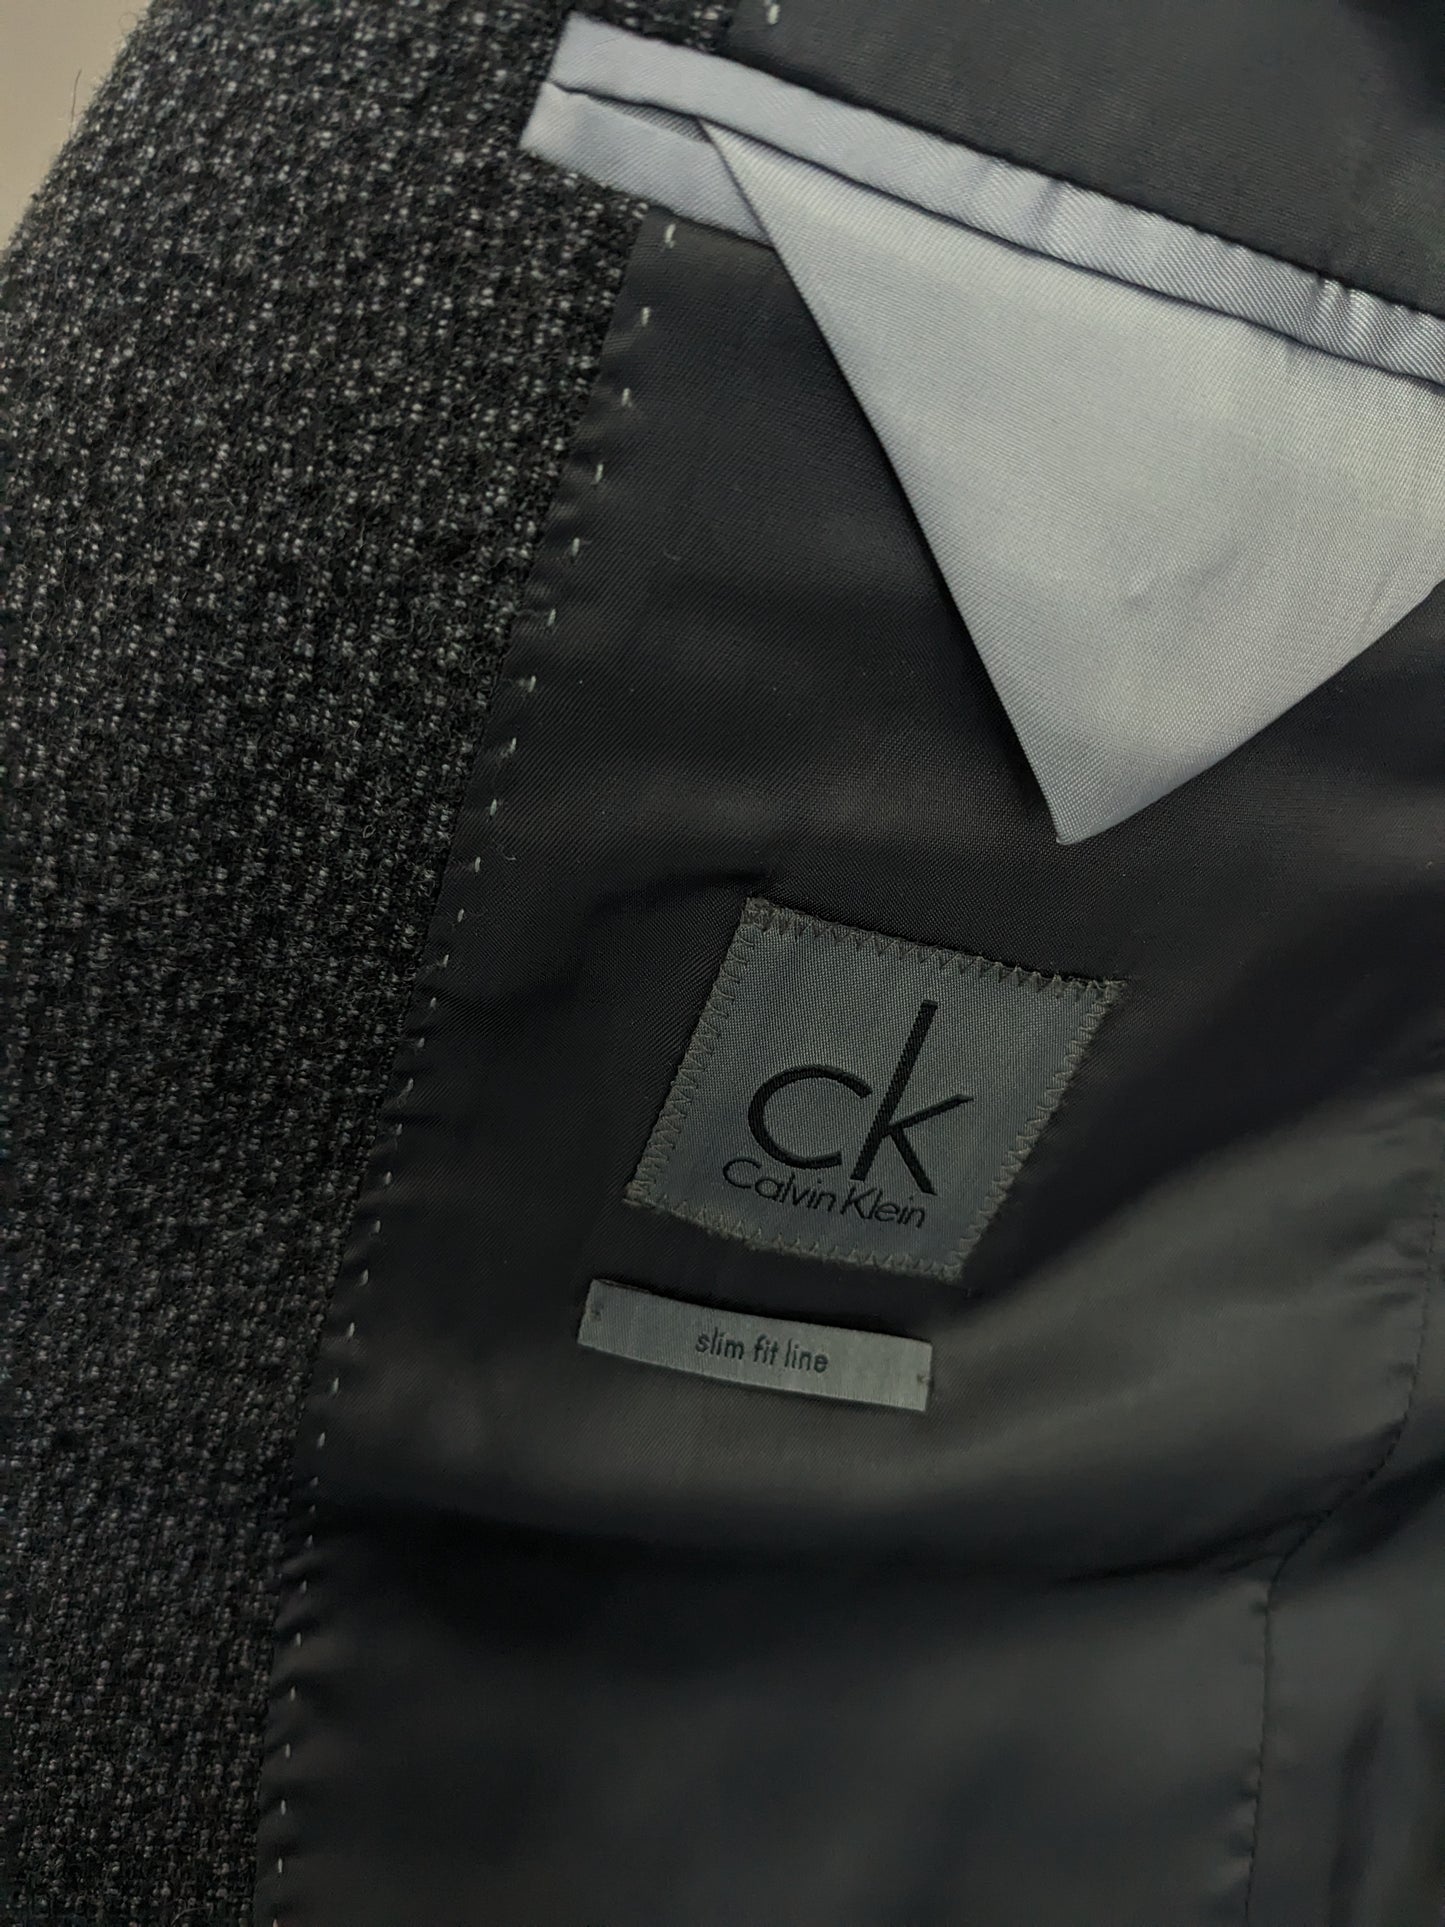 Giacca di lana Calvin Klein CK. Motivo misto nero grigio. Dimensione 50 / M. Slim Fit Line.